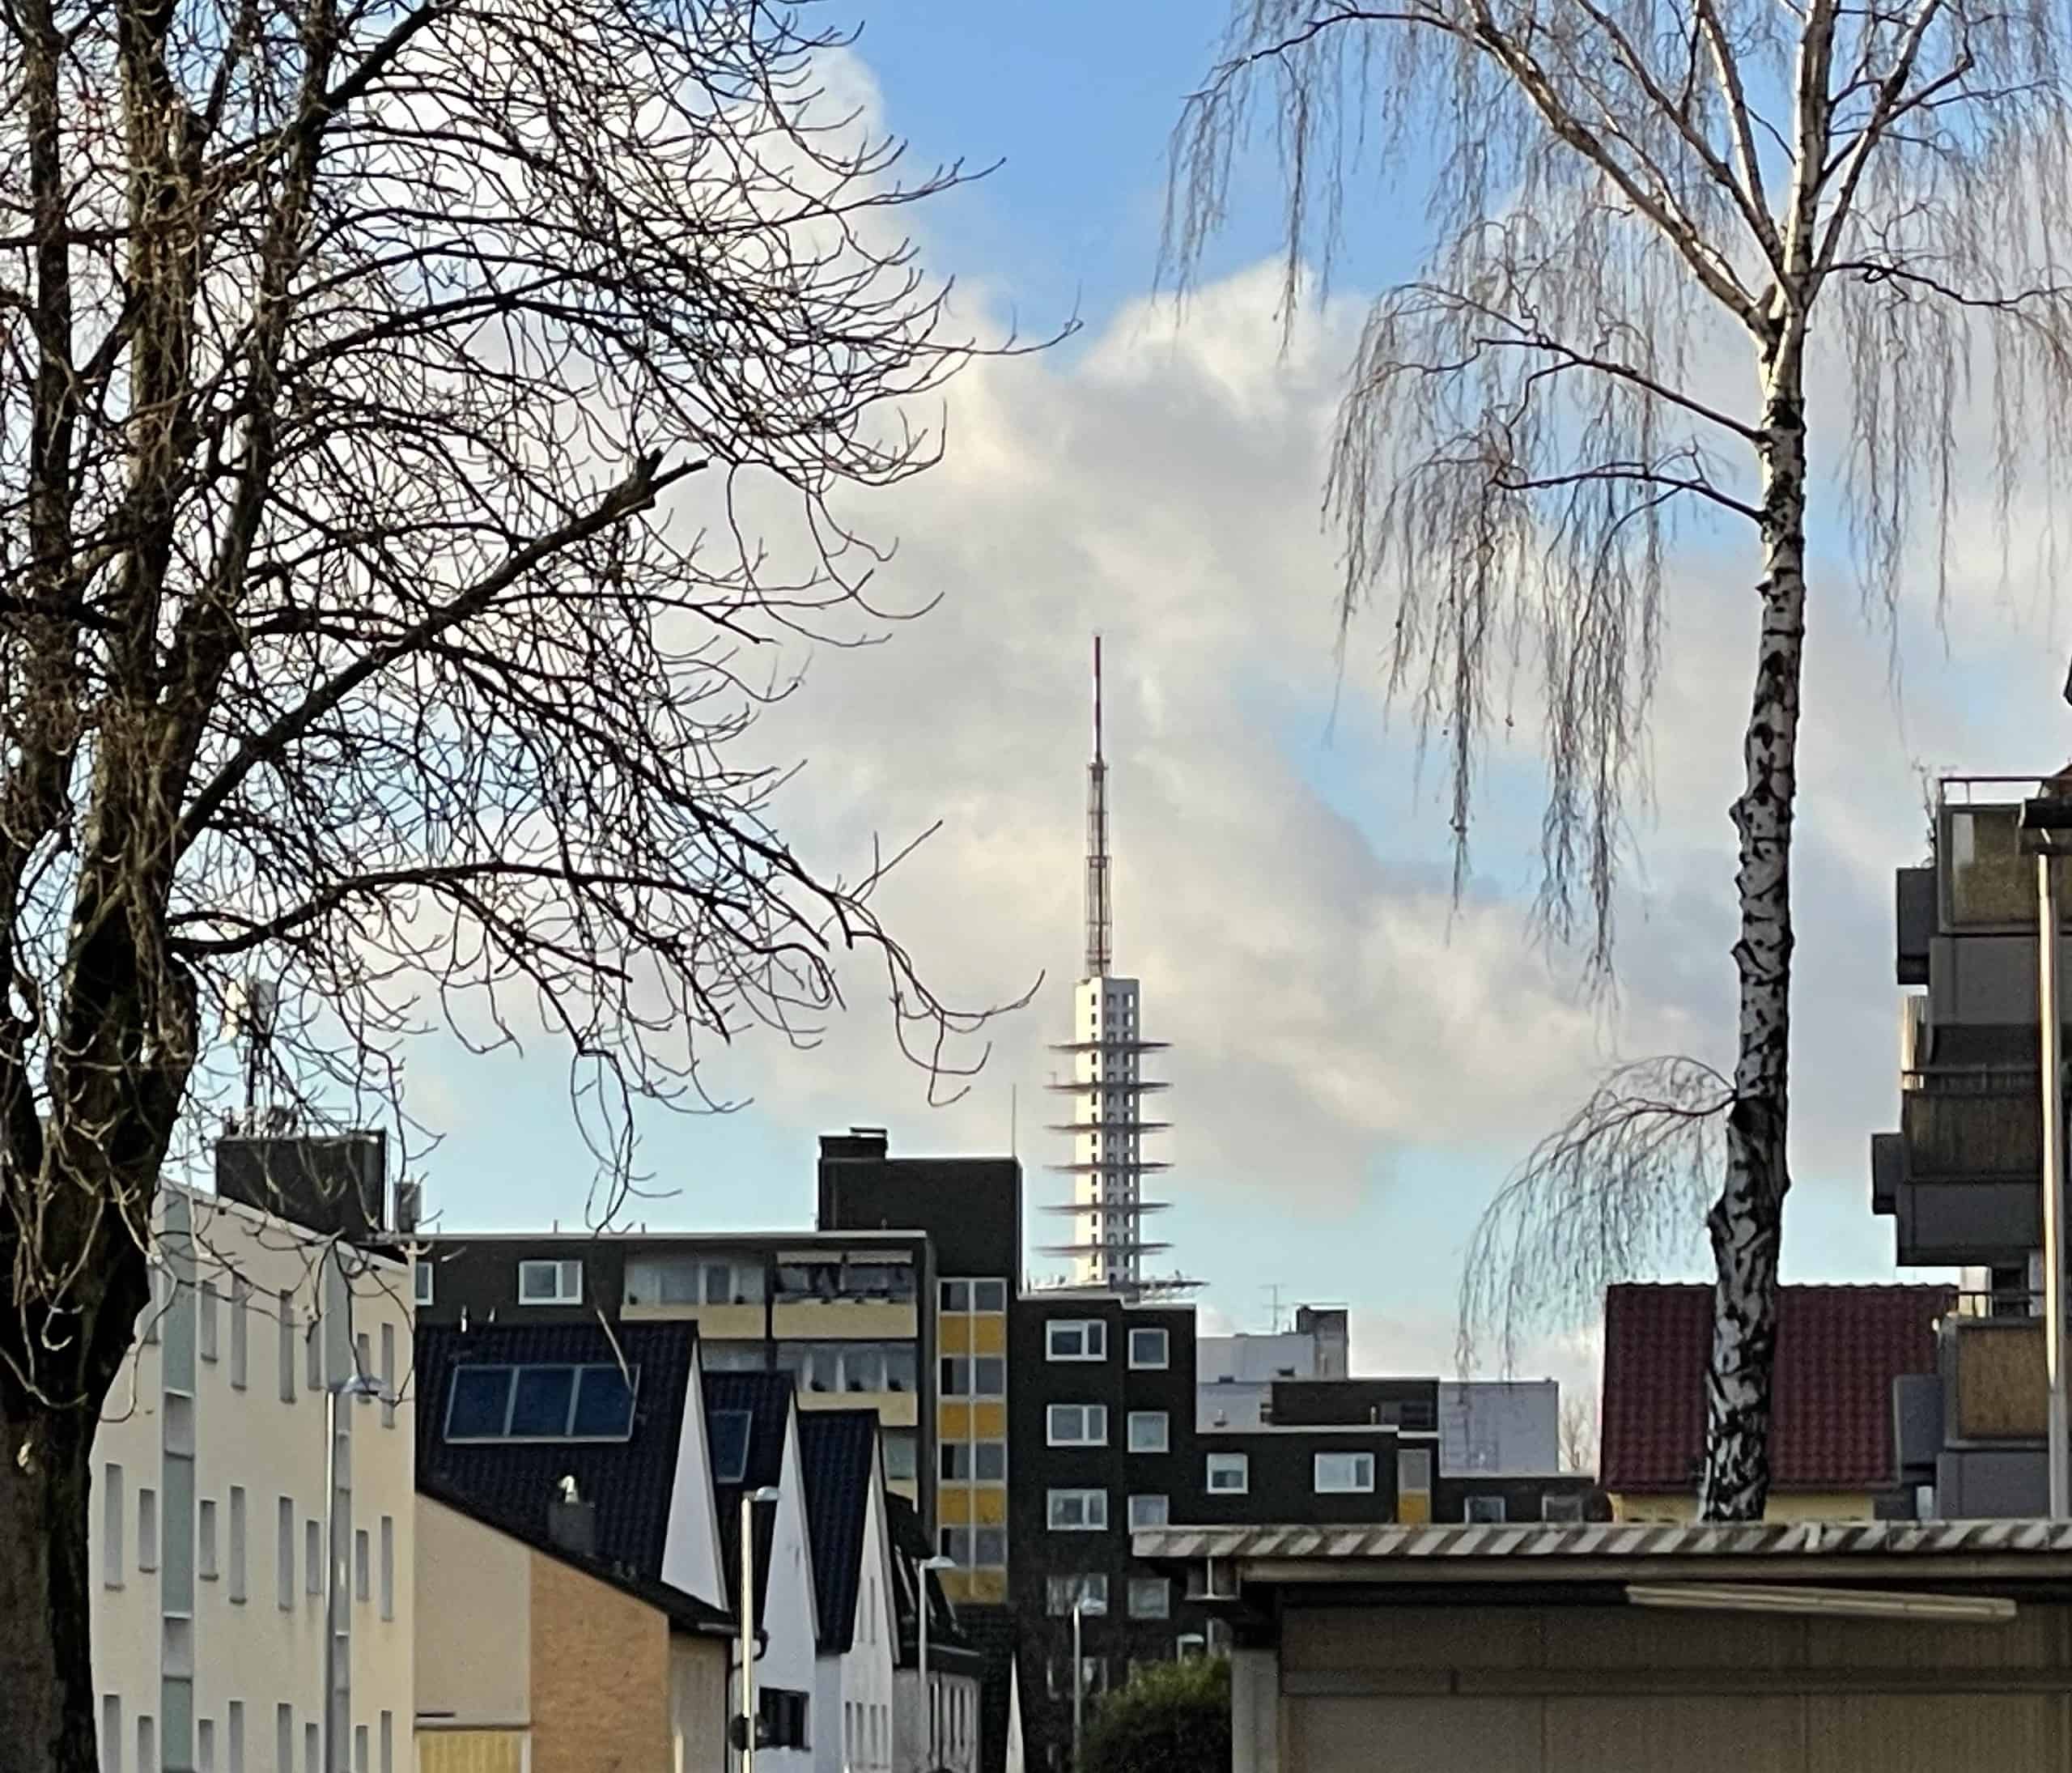 Blick die von Häusern gesäumte Straße entlang. Eingerahmt von zwei Birken und der Telemax, der hannovesche Funkturm, im Hintergrund.